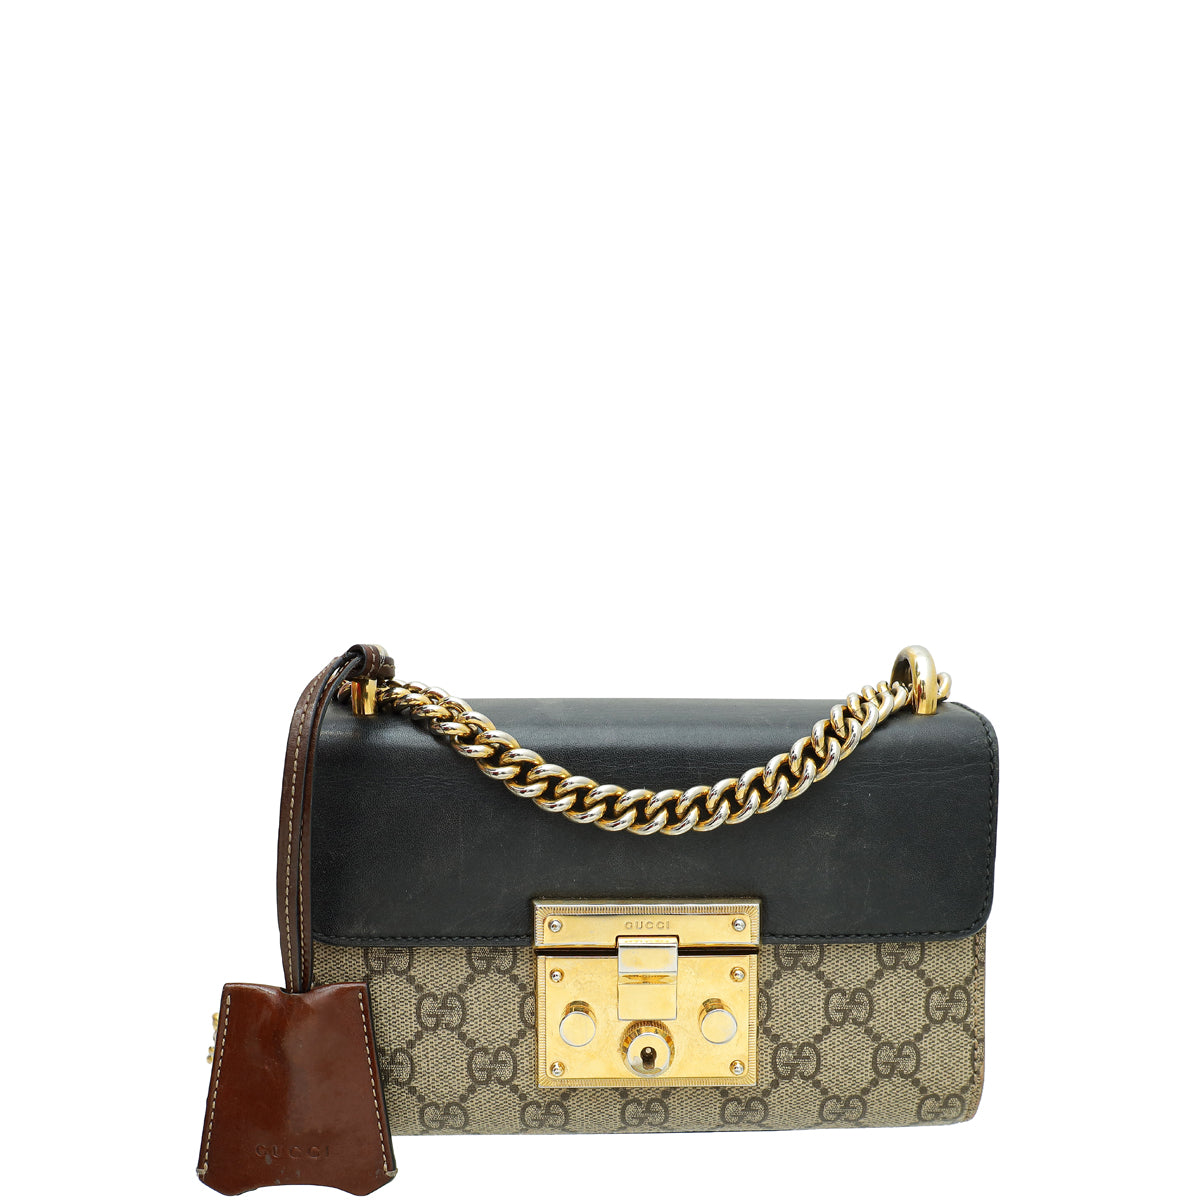 Gucci Tricolor GG Supreme Padlock Small Bag